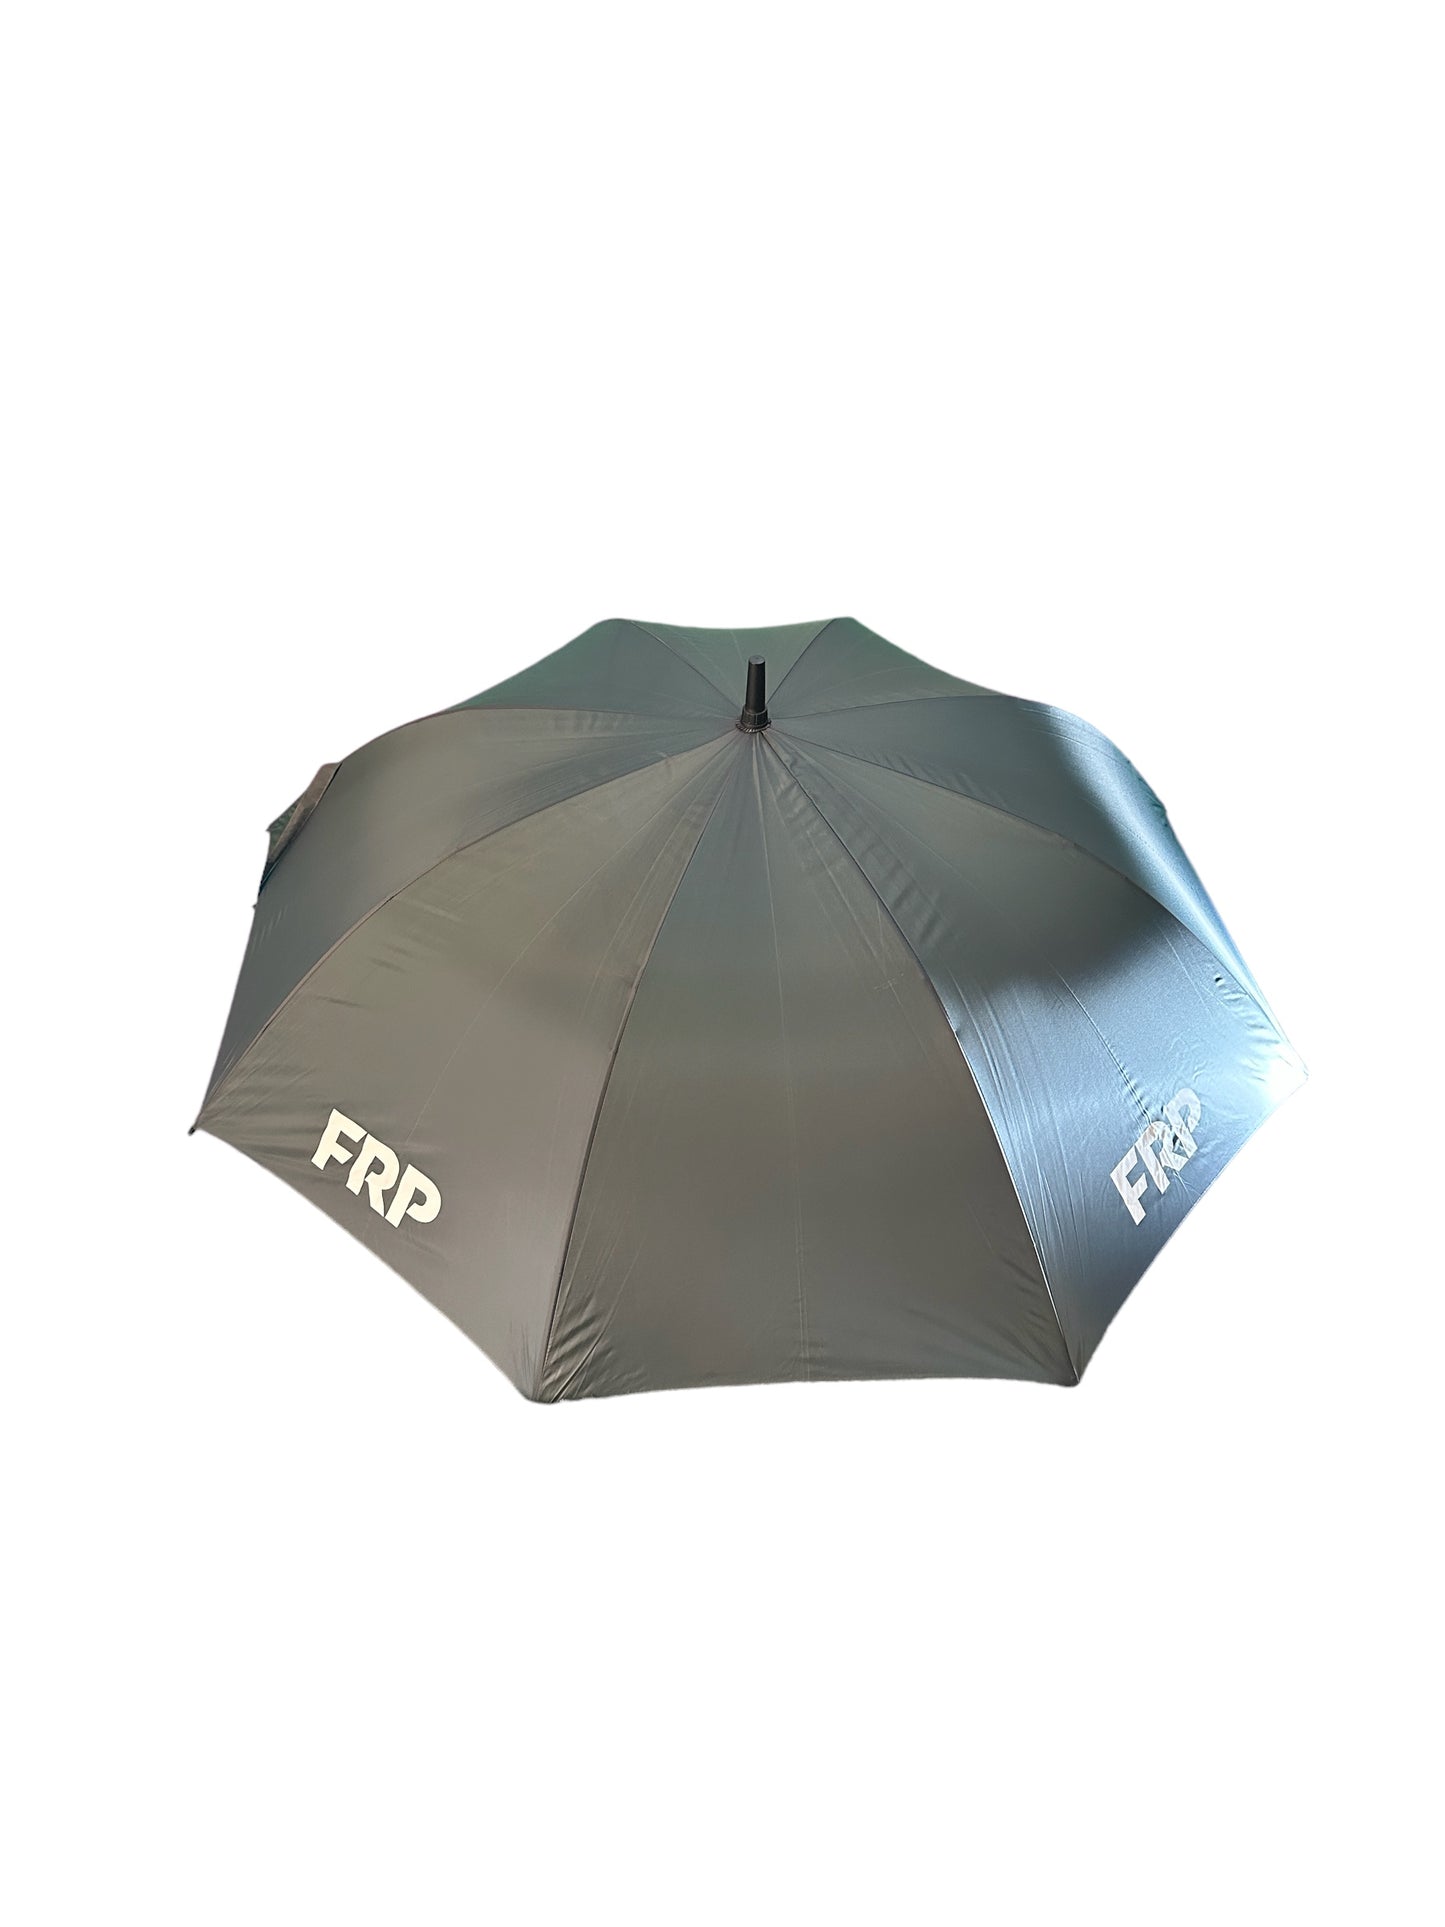 Fare Golf Umbrella, Brand new